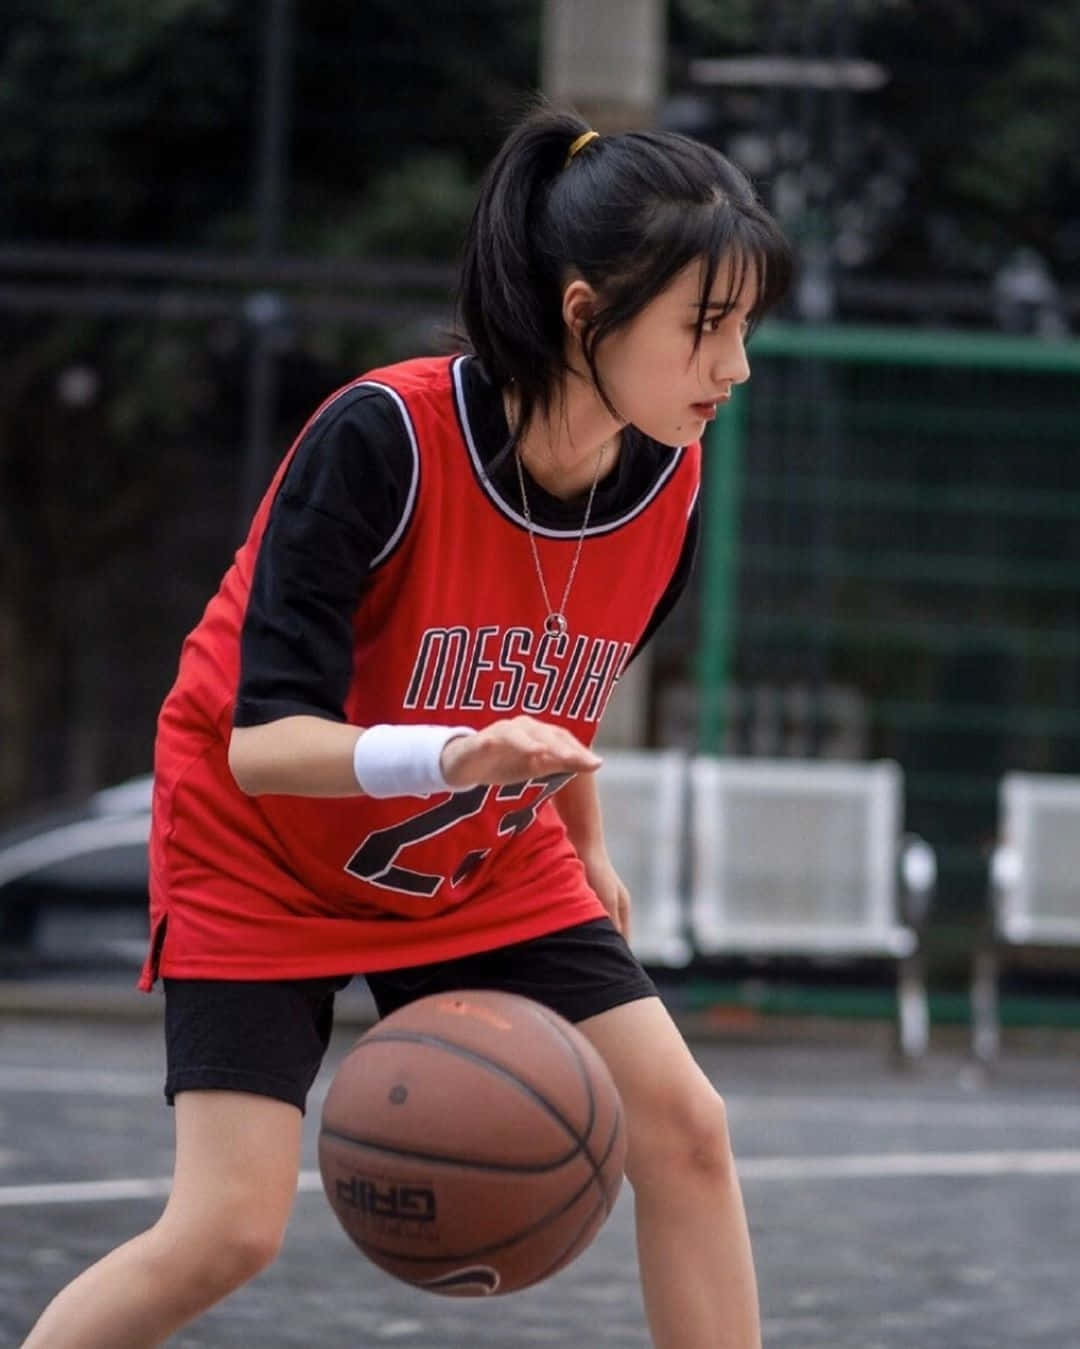 Basketball Girlin Action Aesthetic.jpg Wallpaper